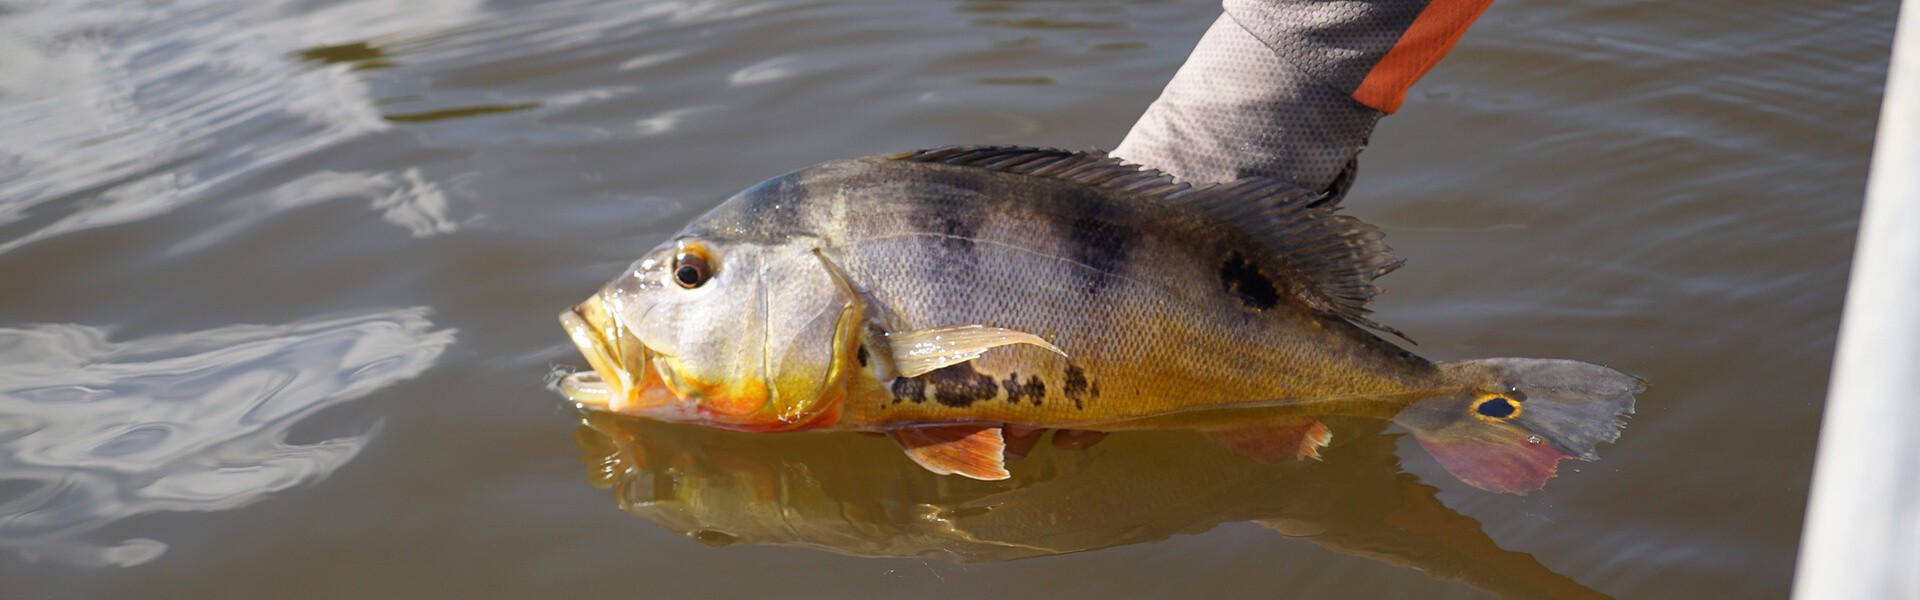 Governo de Rondônia revoga proibição da pesca esportiva